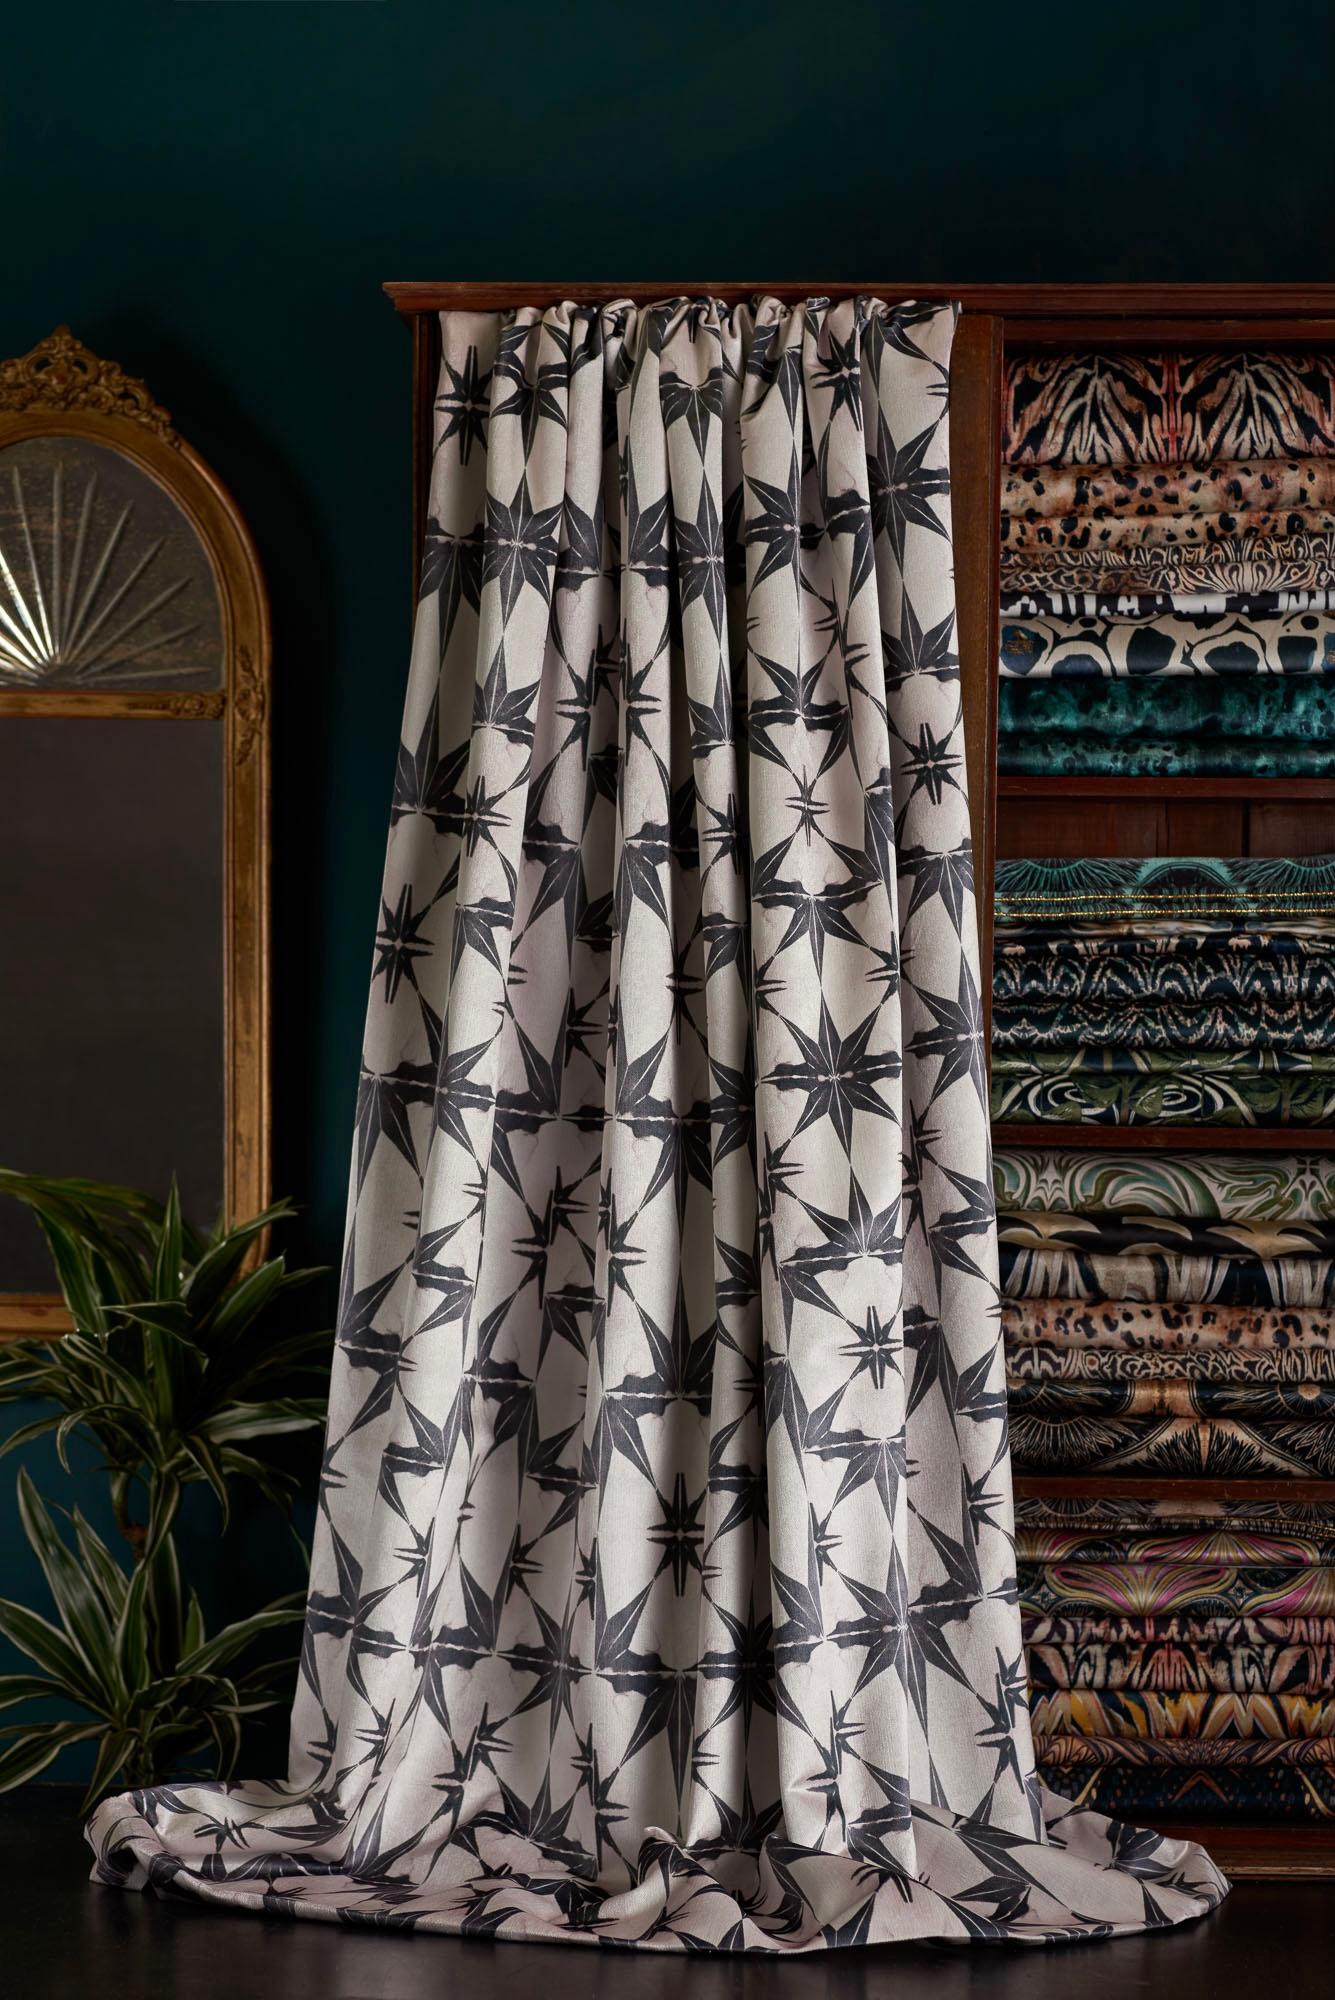 Das von marokkanischen Fliesen inspirierte Design Wanderlust Blush ist in sanften Rosatönen und Anthrazit/Schwarz gehalten.

Dieser Samt hat ein mittleres Gewicht und eine feste, gerade gewebte Rückseite. Er eignet sich daher für Polsterungen, ist